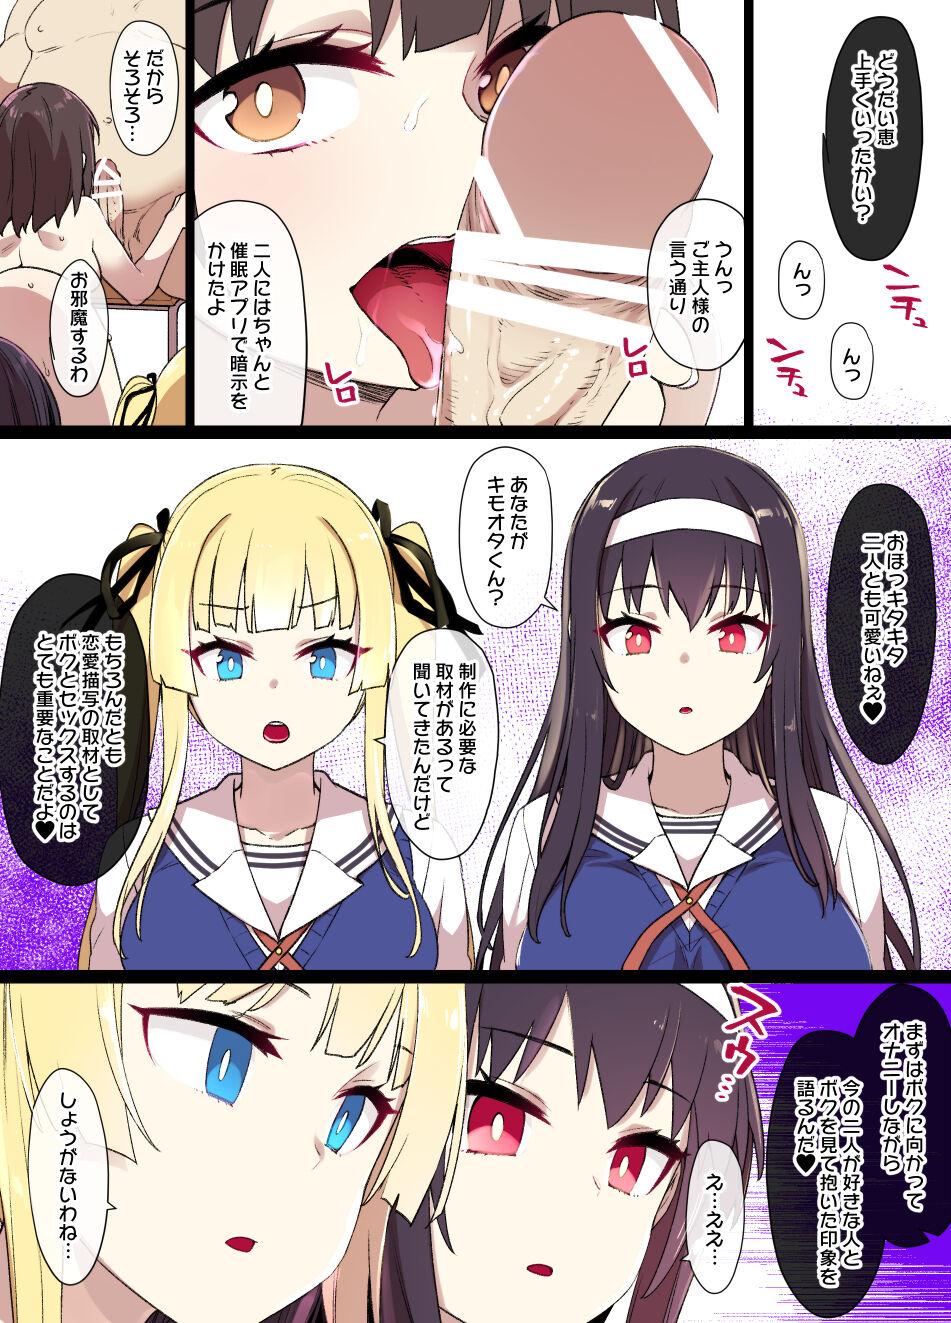 Gang [Kusayarou] Saekano NTR Manga 16P - Saimin Sennou & Bitch-ka (Saenai Heroine no Sodatekata) - Saenai heroine no sodatekata Orgia - Page 4